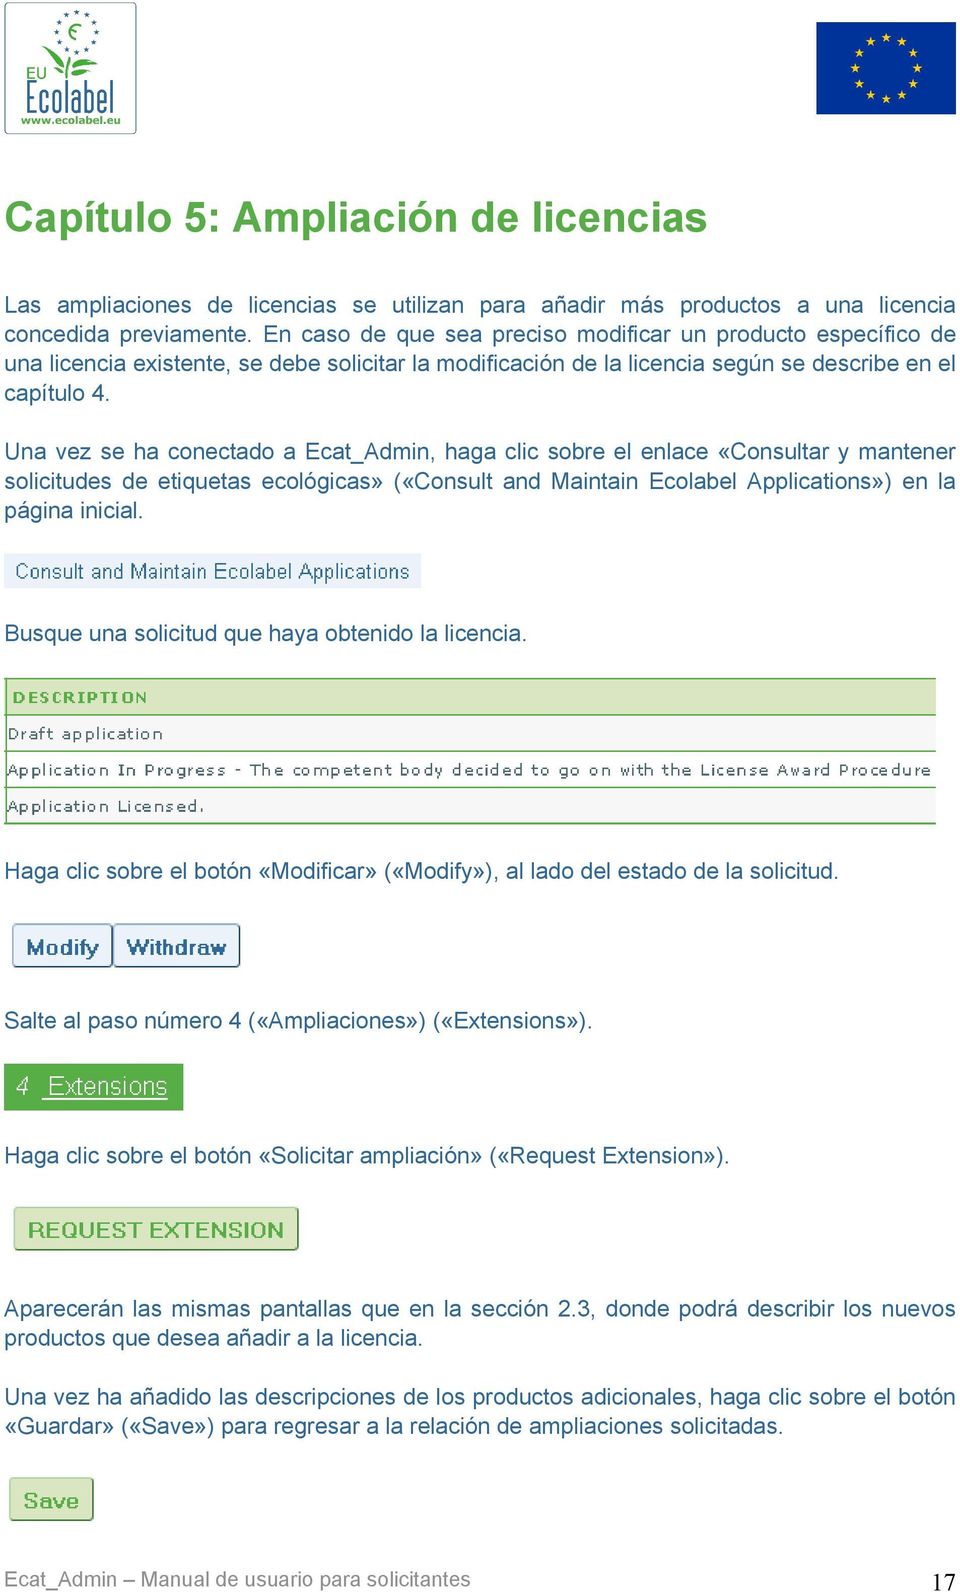 Una vez se ha conectado a Ecat_Admin, haga clic sobre el enlace «Consultar y mantener solicitudes de etiquetas ecológicas» («Consult and Maintain Ecolabel Applications») en la página inicial.